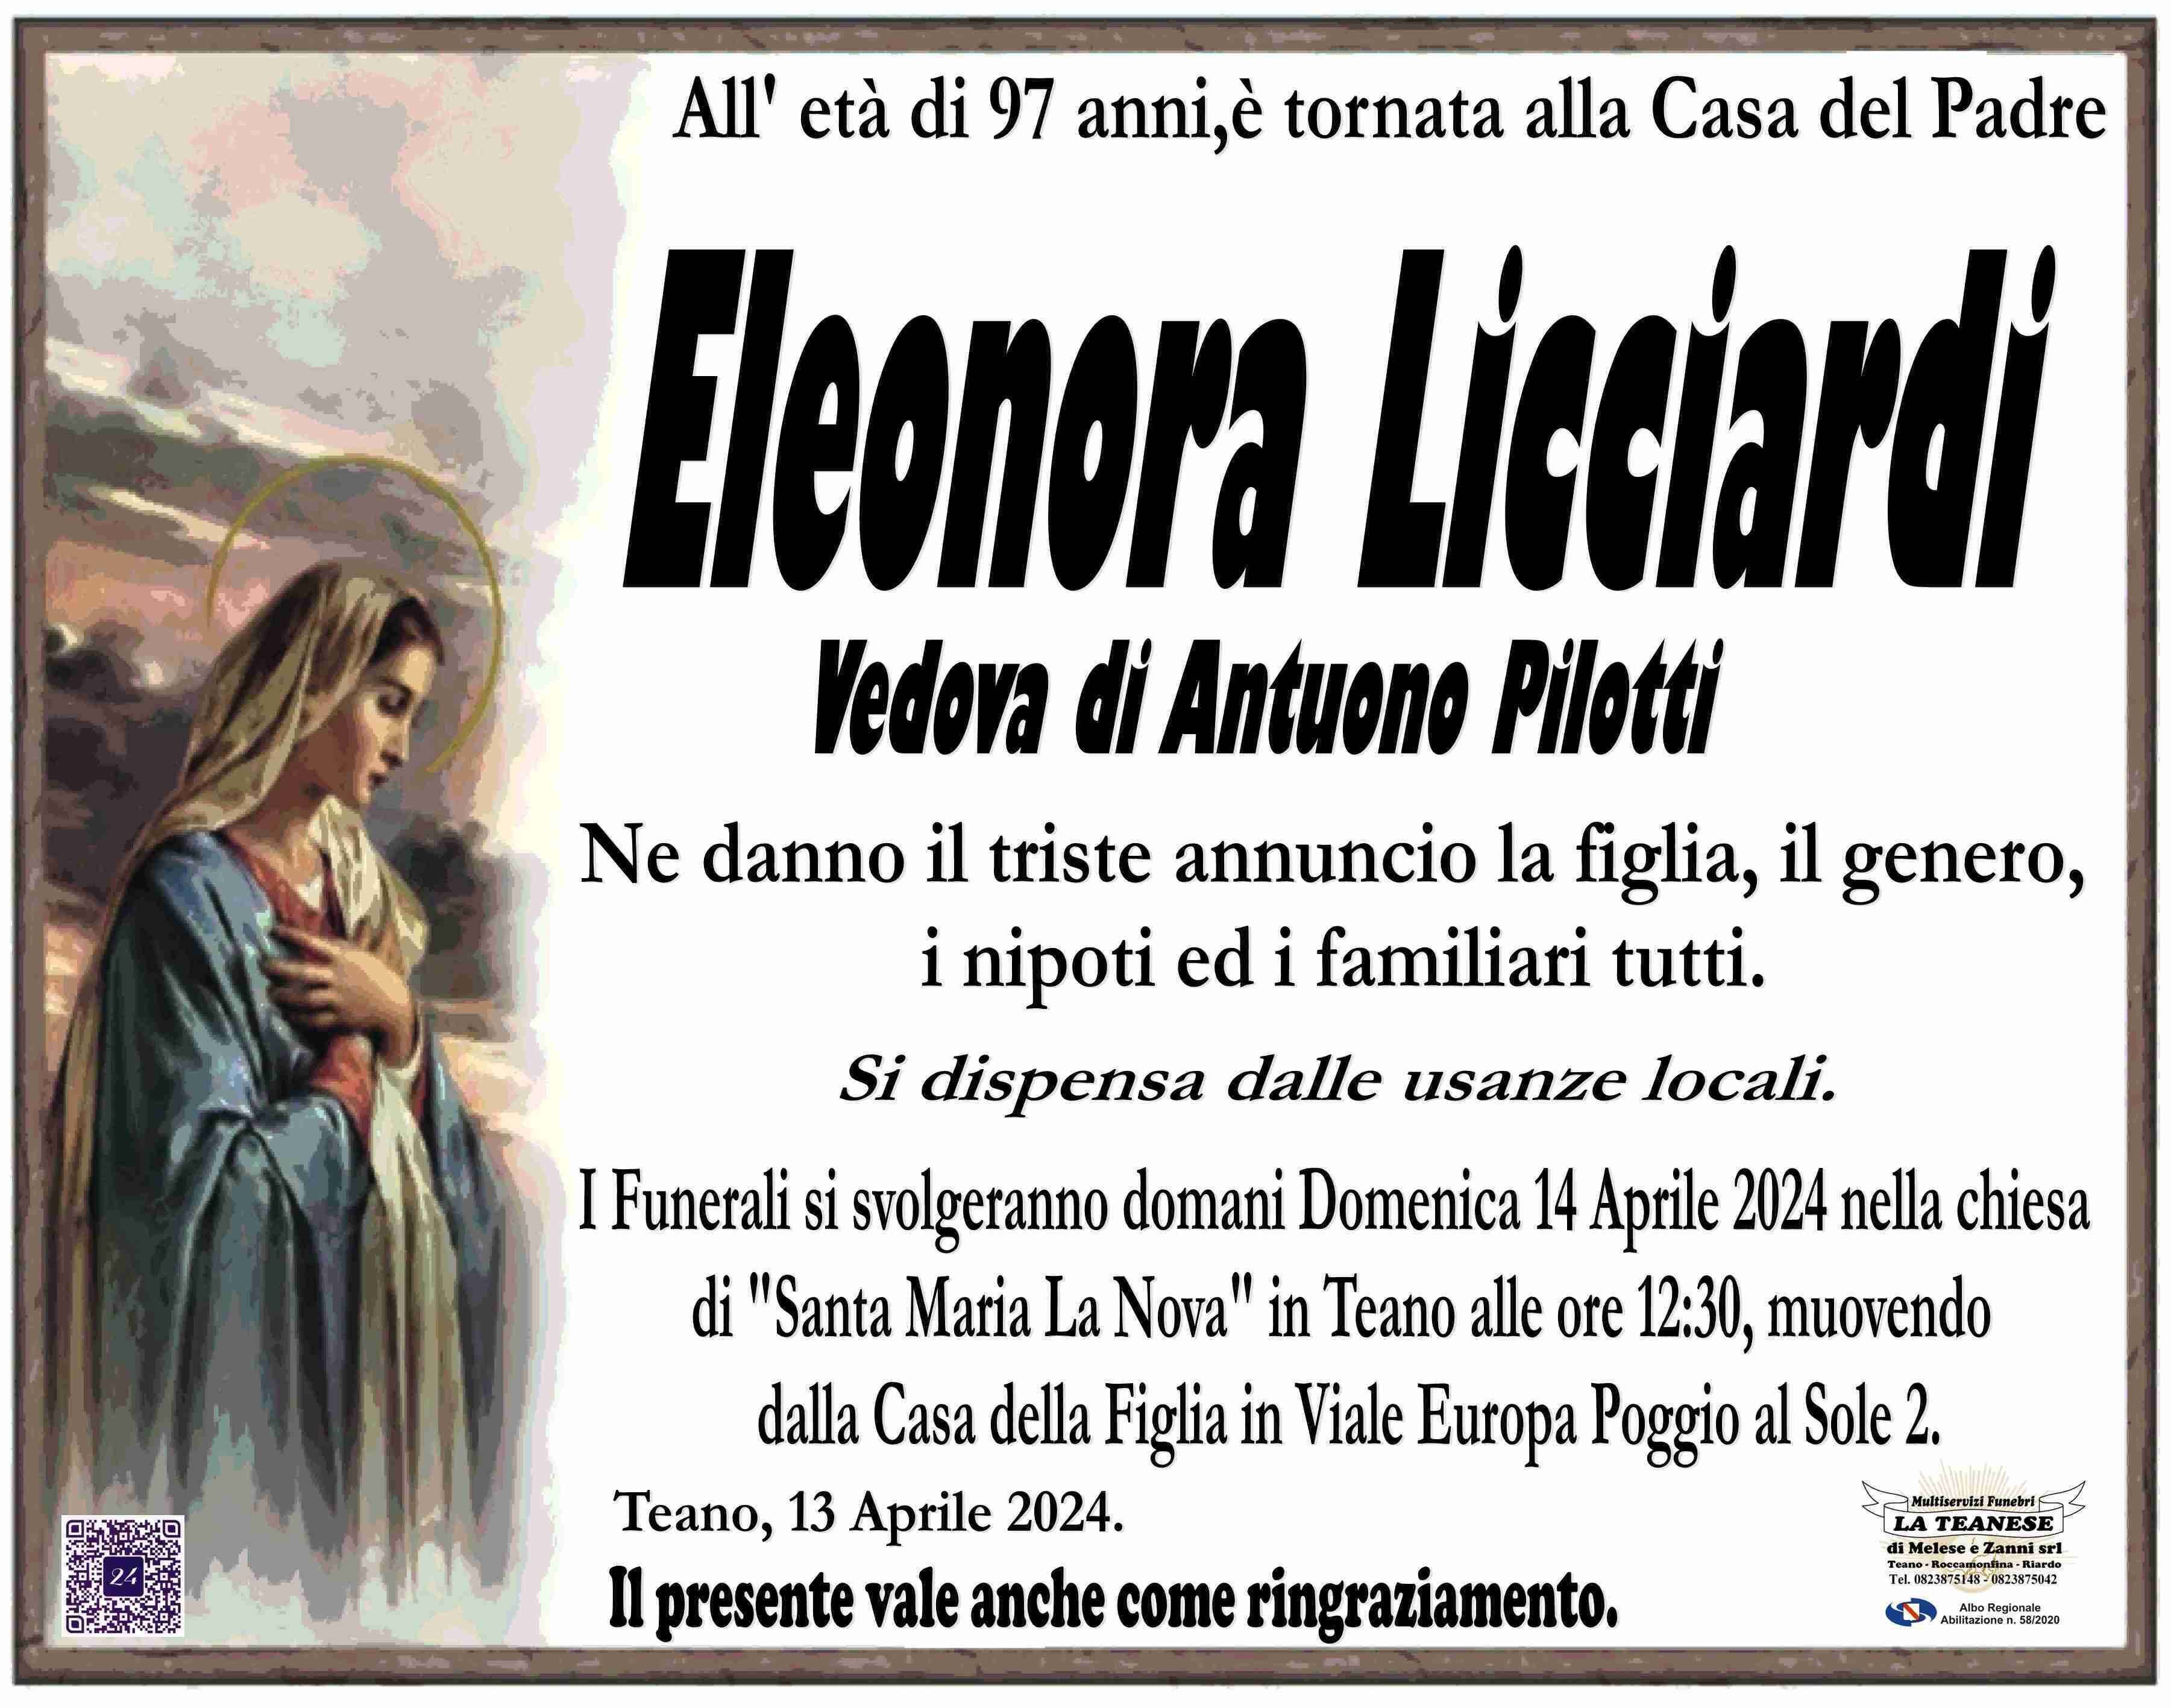 Eleonora Licciardi